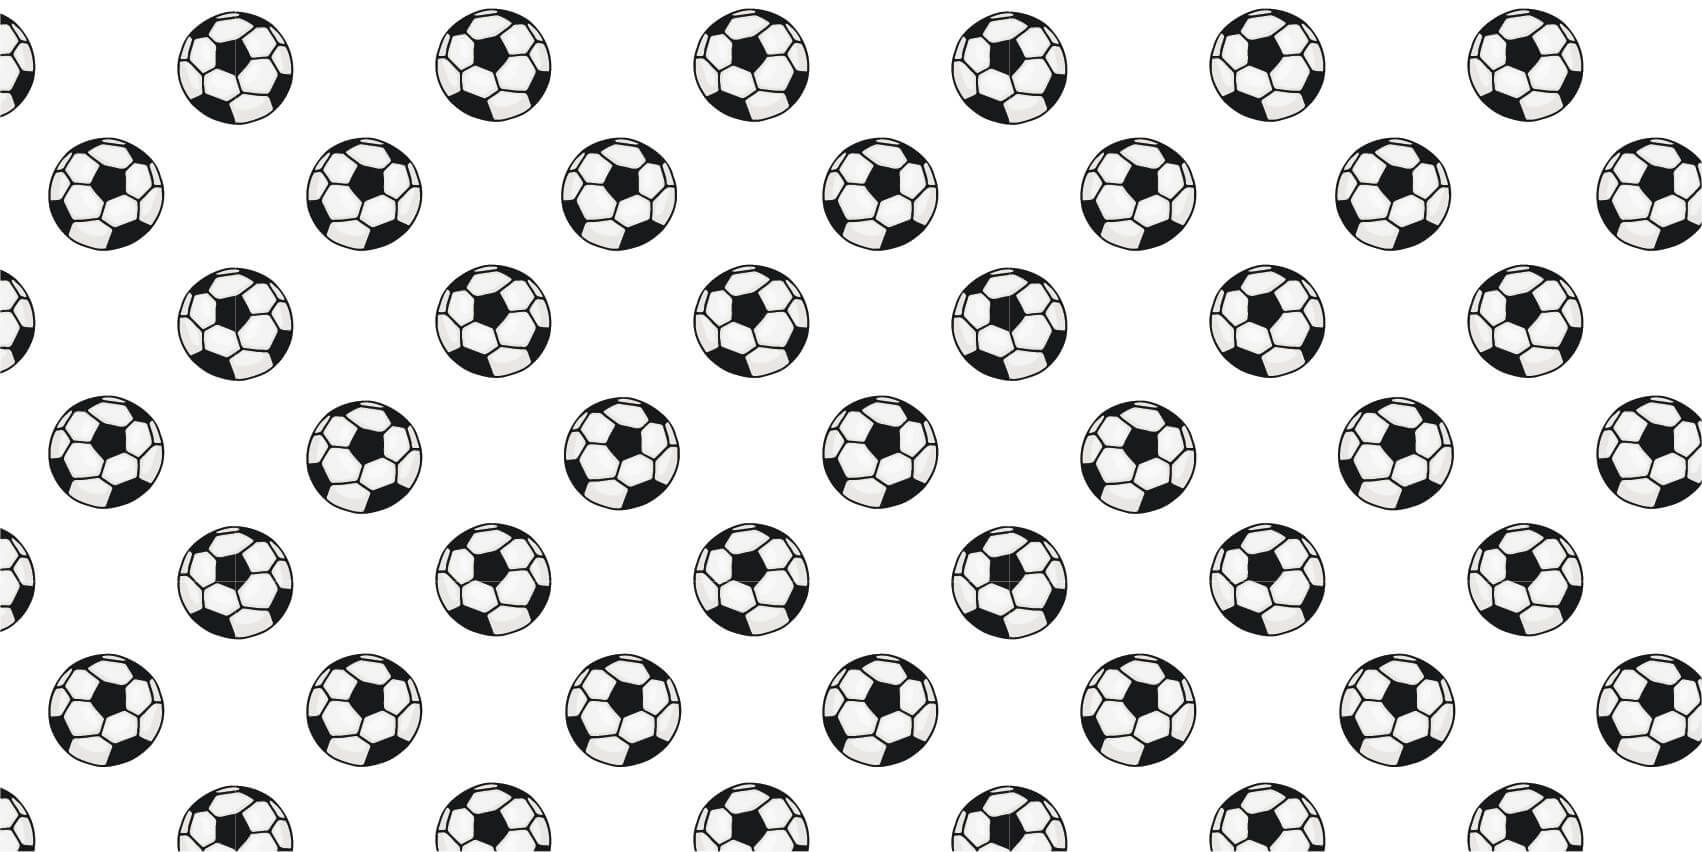 Voetbal behang - Behang met voetballen - Kinderkamer